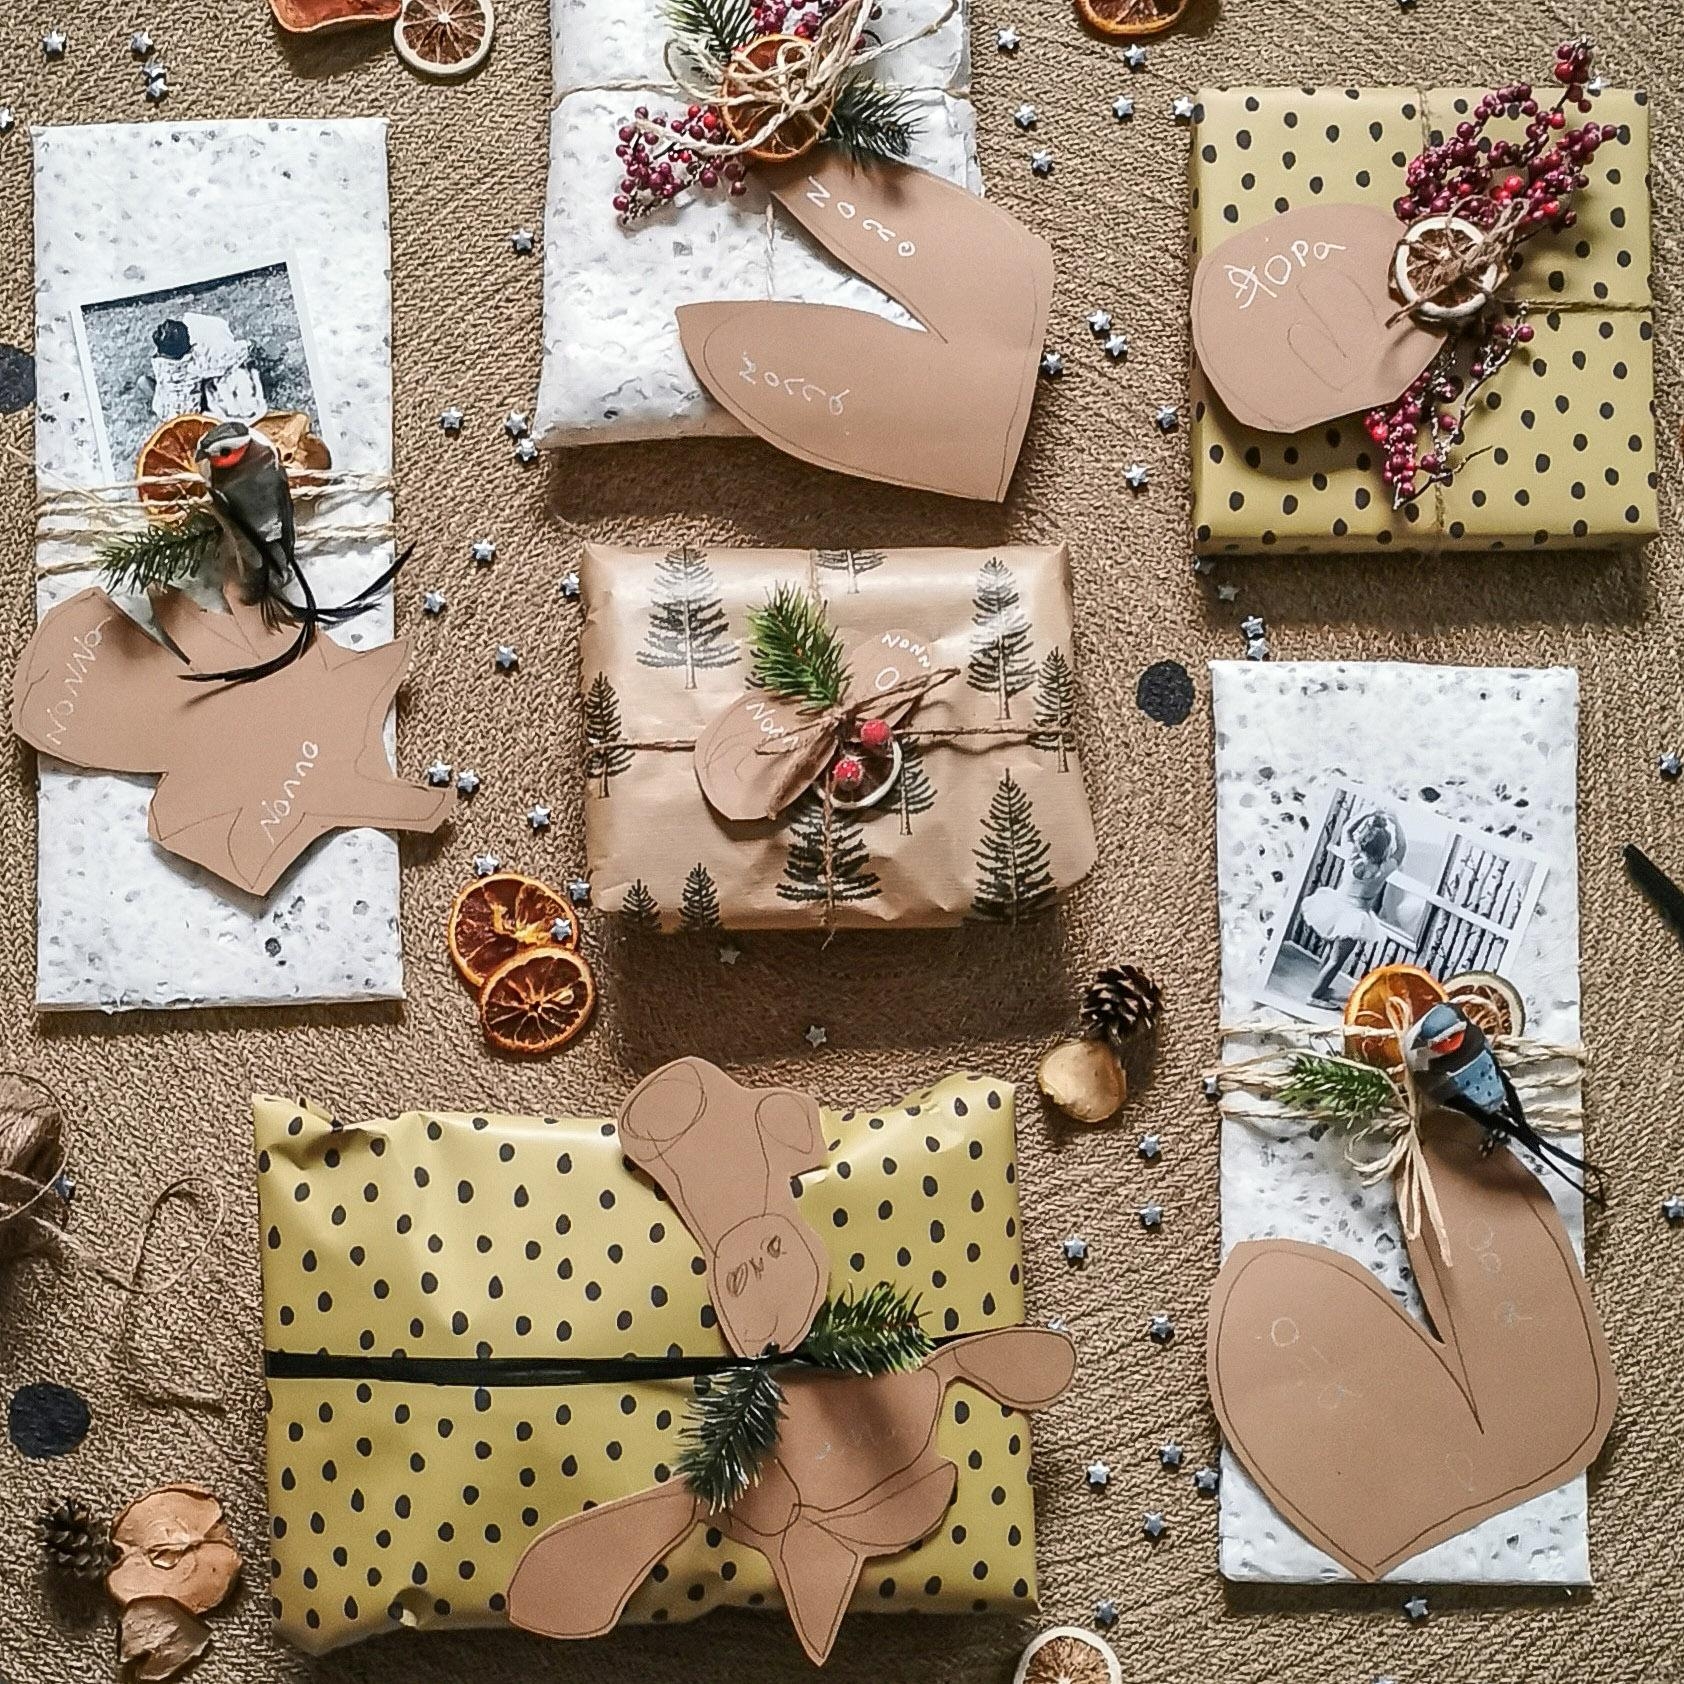 Weihnachtliche #geschenkverpackung mit Fotos und selbstgestalteten Geschenkanhängern der Kinder für Oma und Opa #weihnachtsdeko